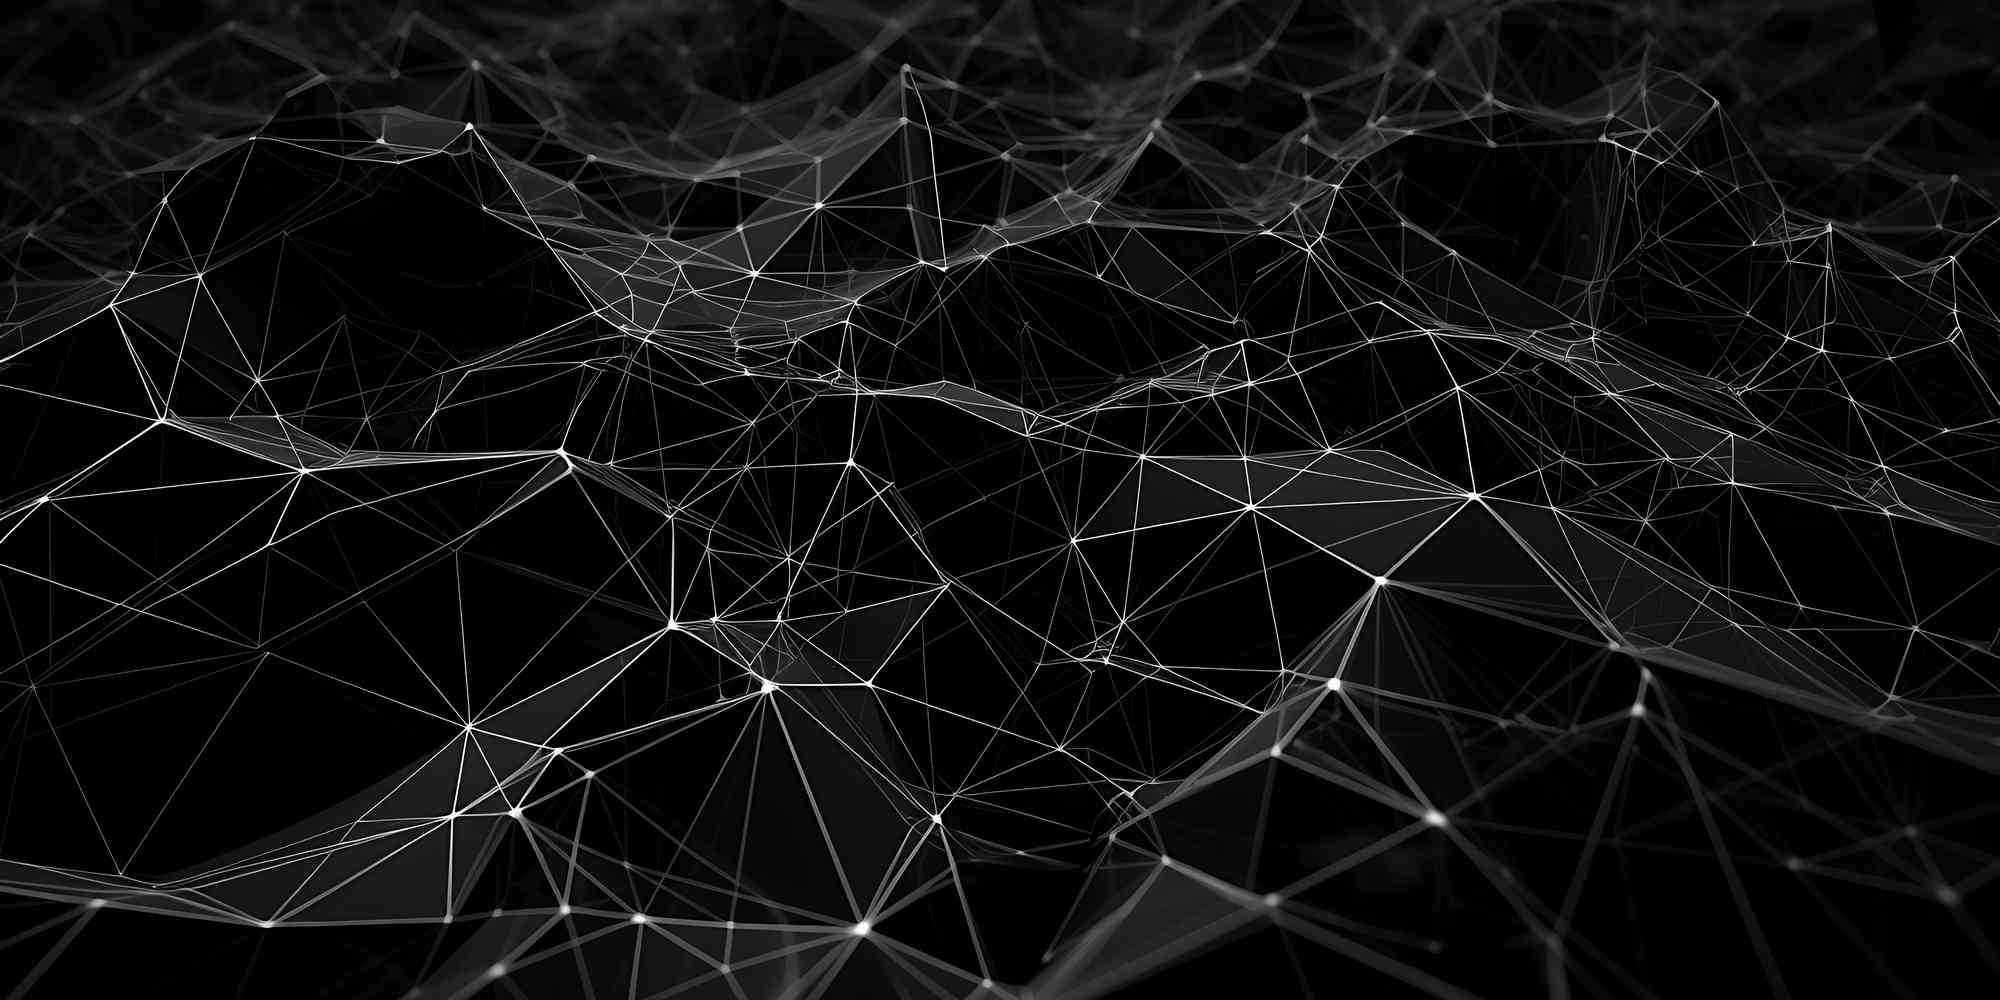 一个黑暗的背景，上面有连接线和点。这些线和点有些是白色的，有些是灰色的。整个图案看起来像一张蜘蛛网或一个由线构成的网络。